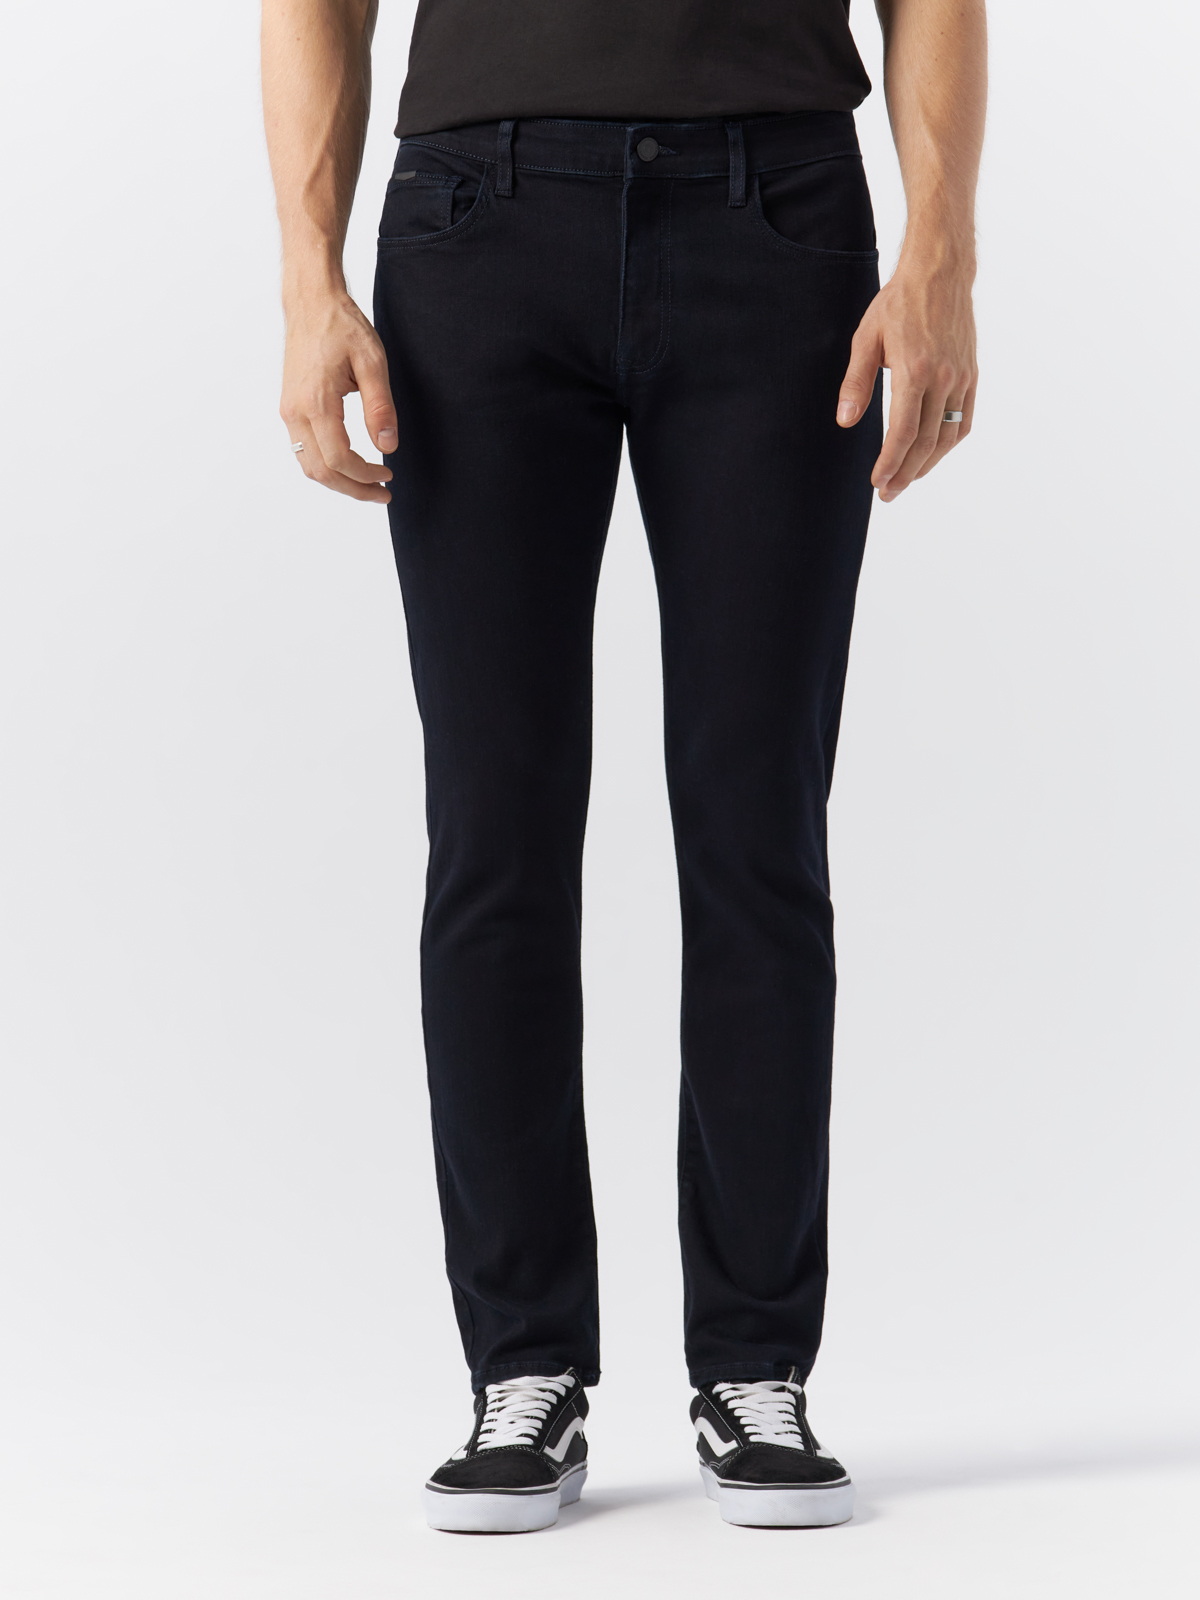 Джинсы Cross Jeans для мужчин, E 185-169, размер 31-30, чёрные